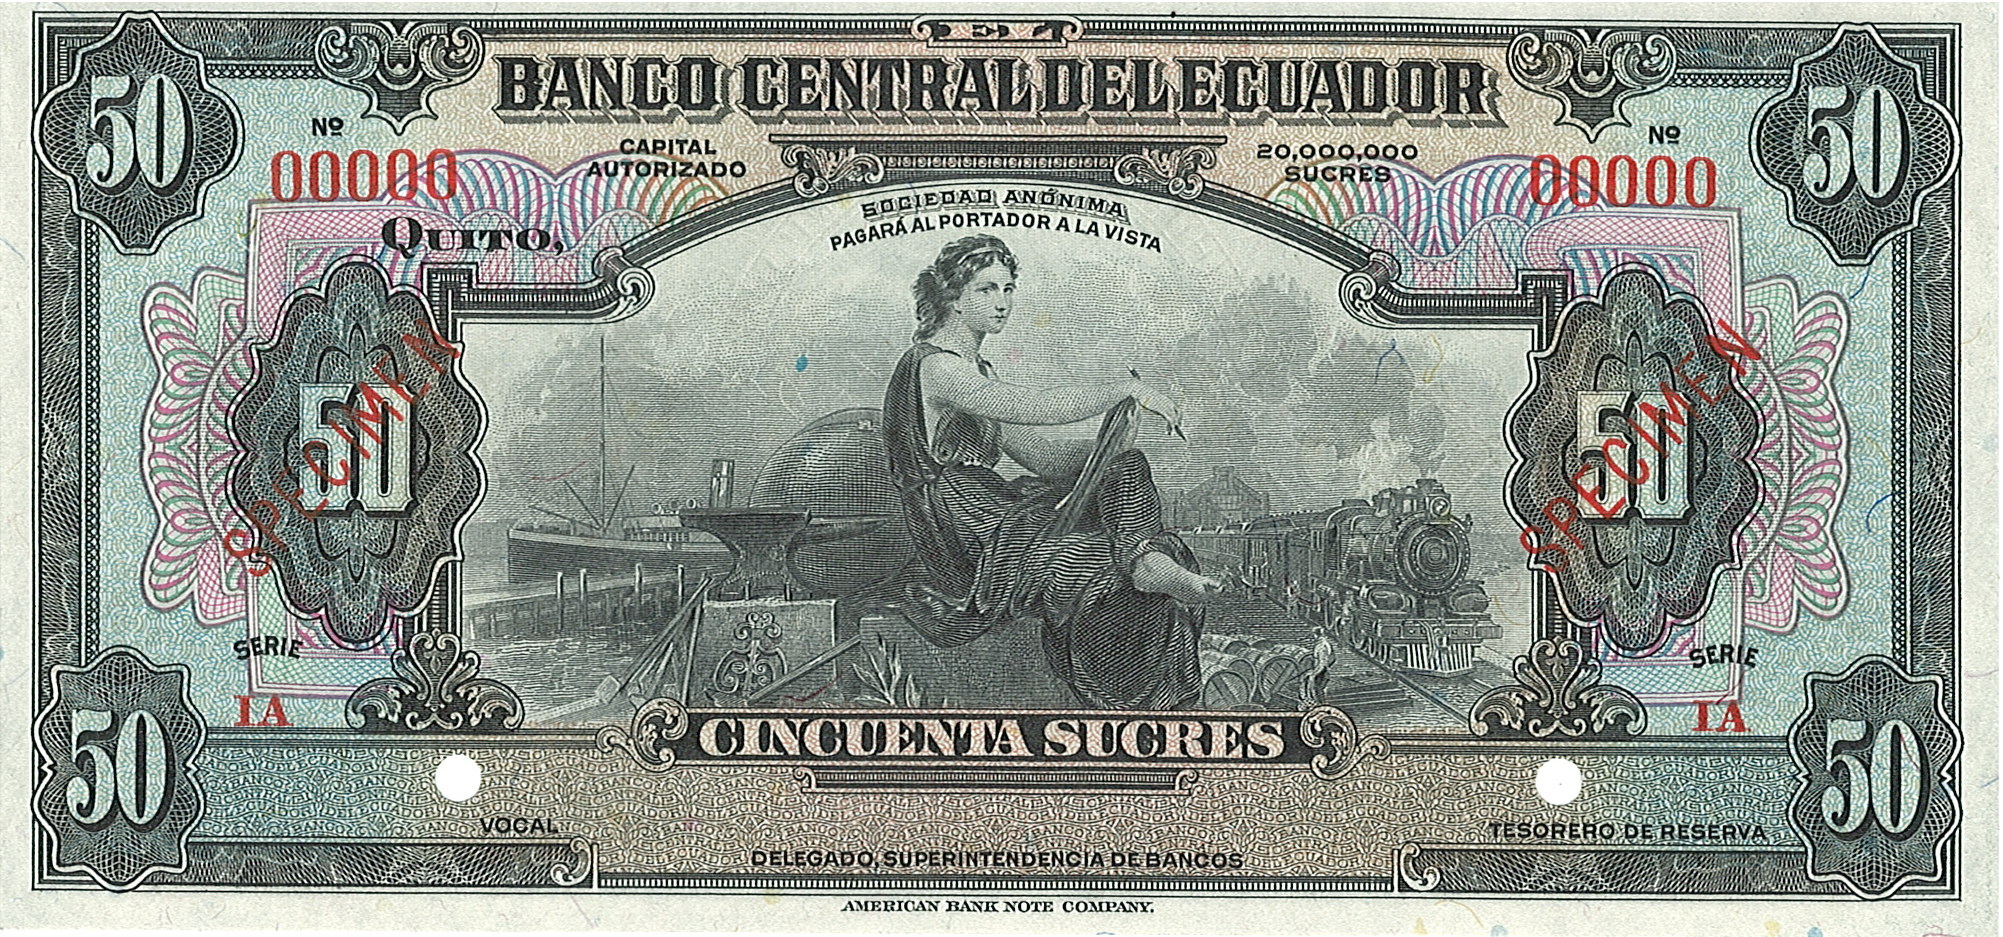 Banco Central Del Ecuador, 50 Sucres, Эквадор